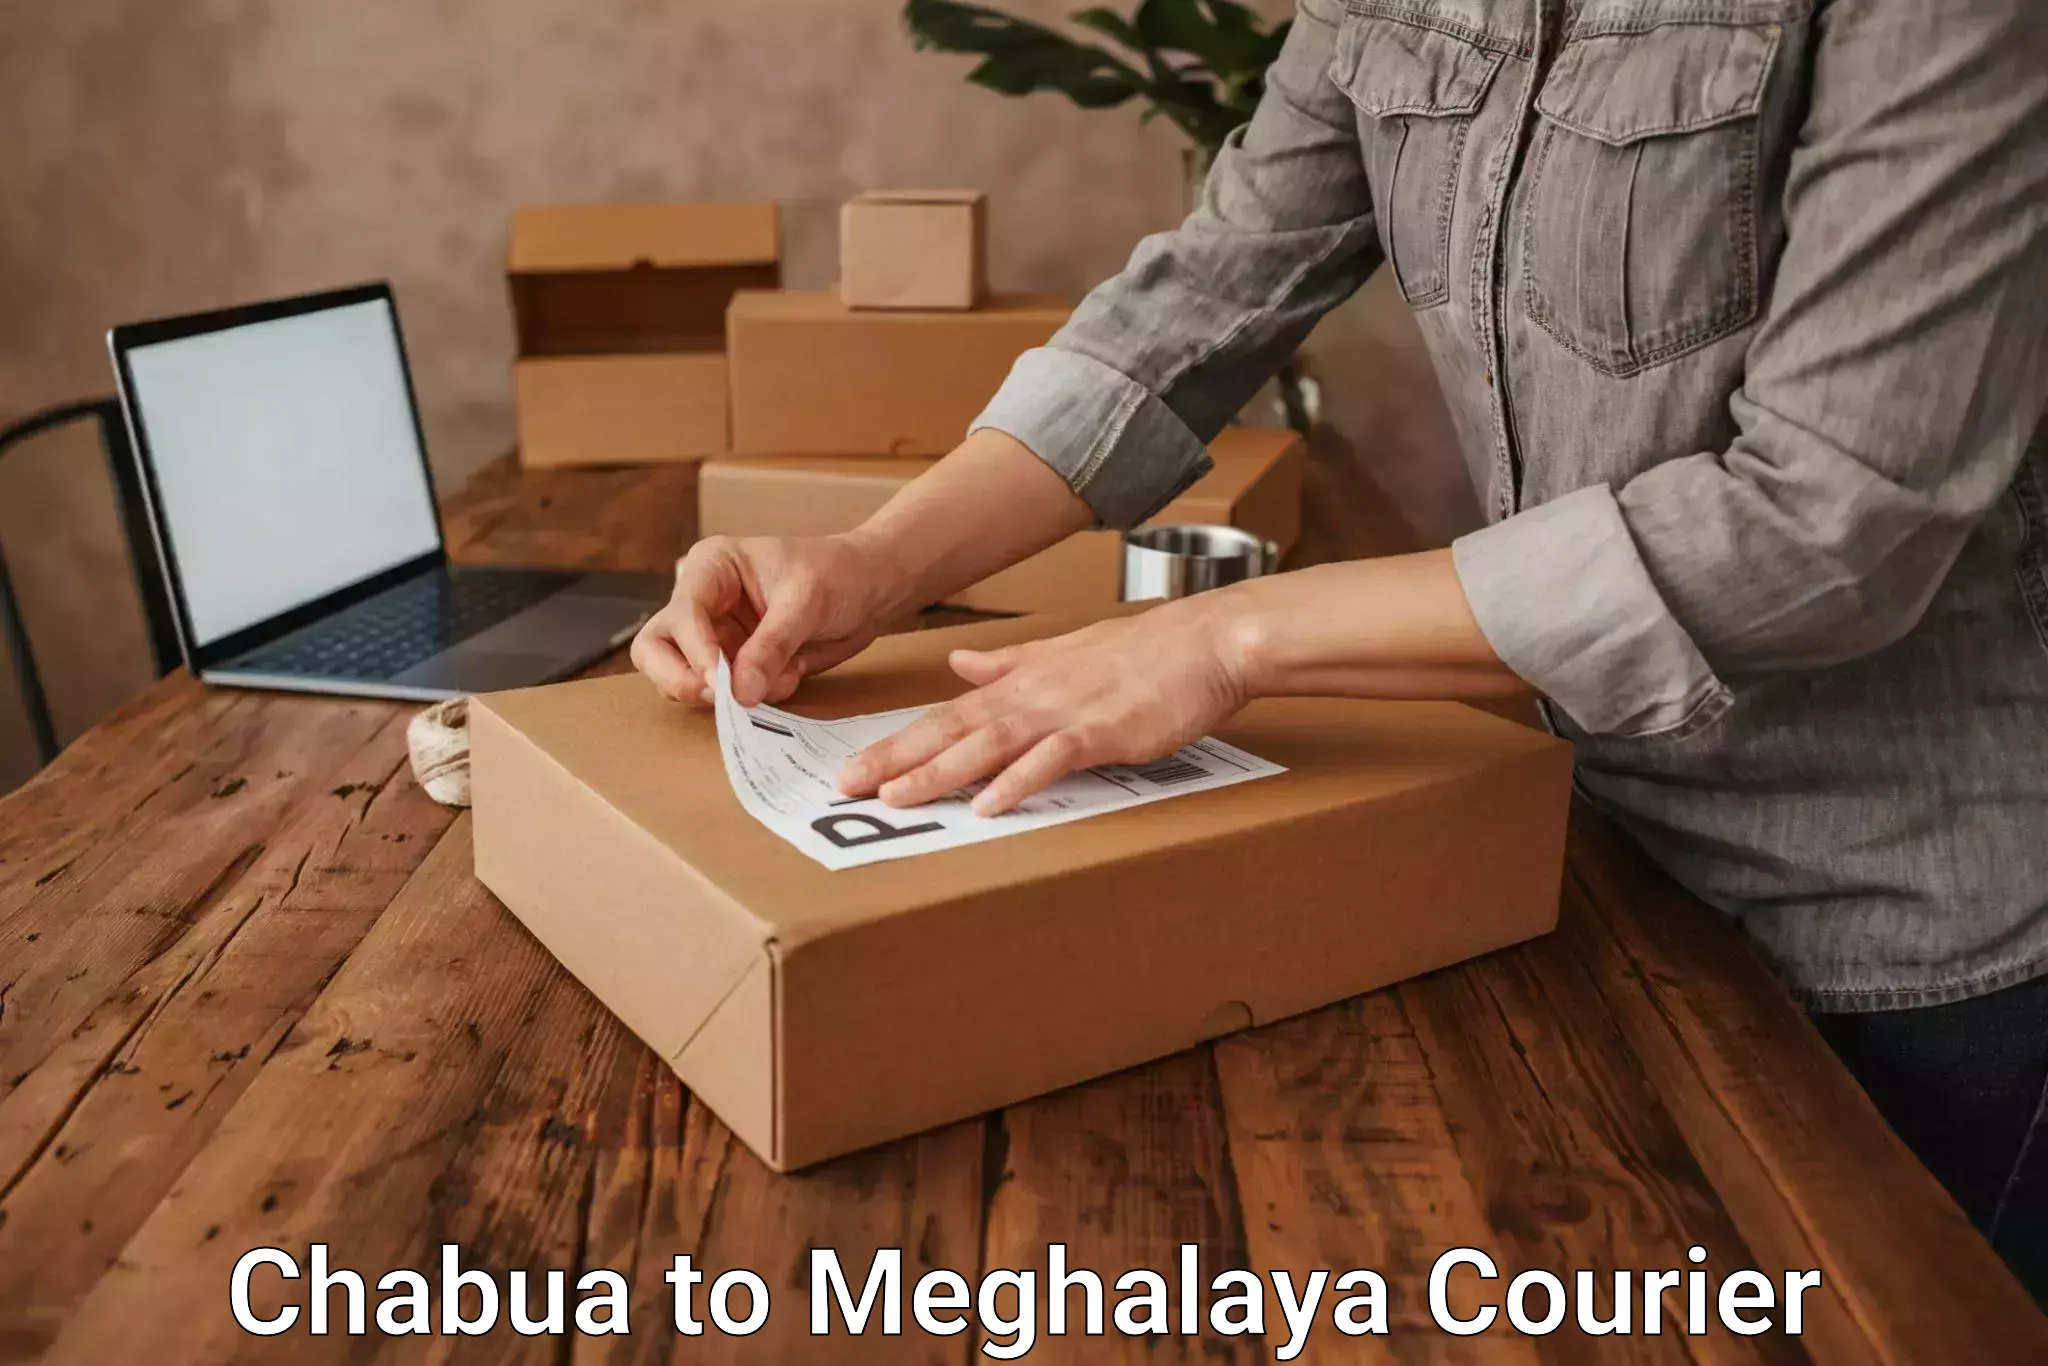 Global logistics network Chabua to Meghalaya